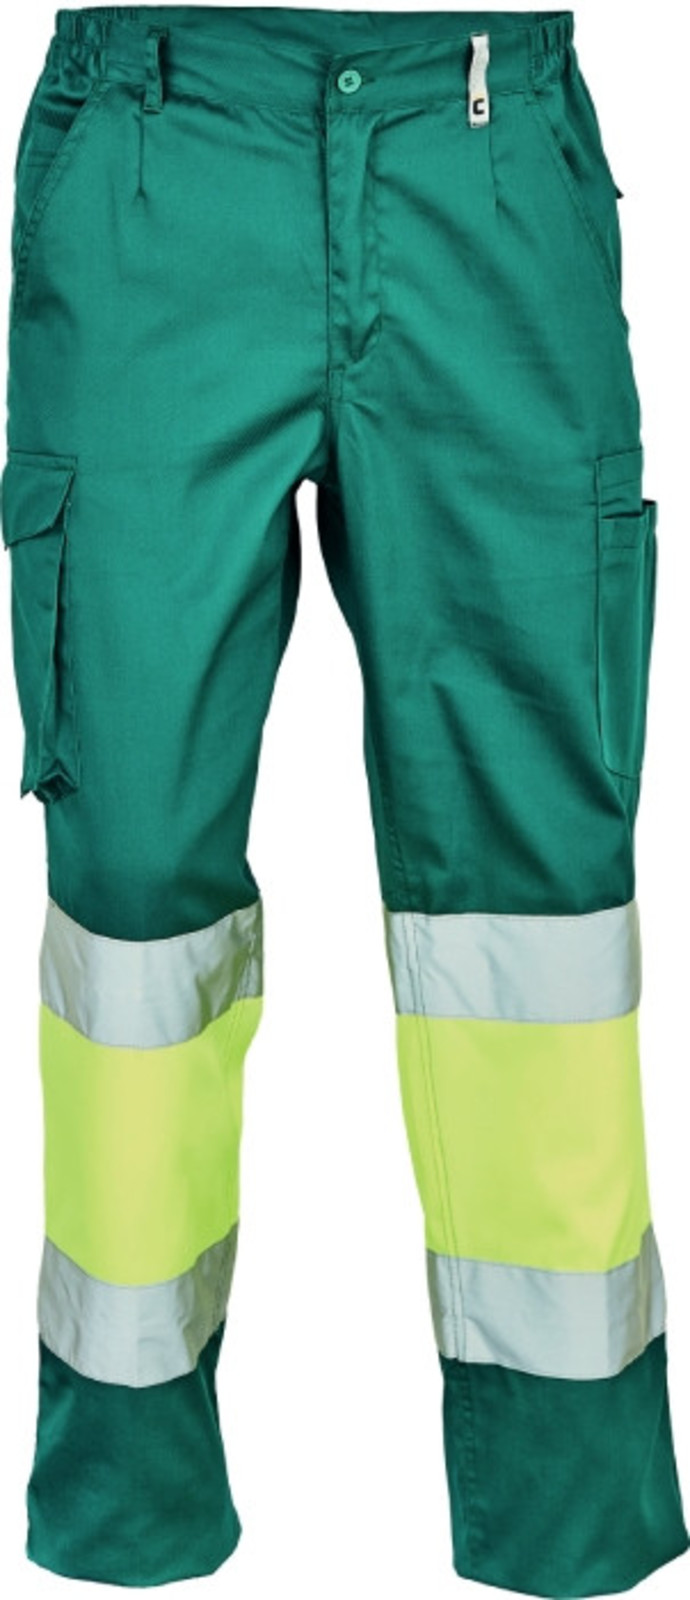 Pracovné reflexné nohavice Cerva Ciudades Bilbao HV - veľkosť: 46, farba: zelená/žltá